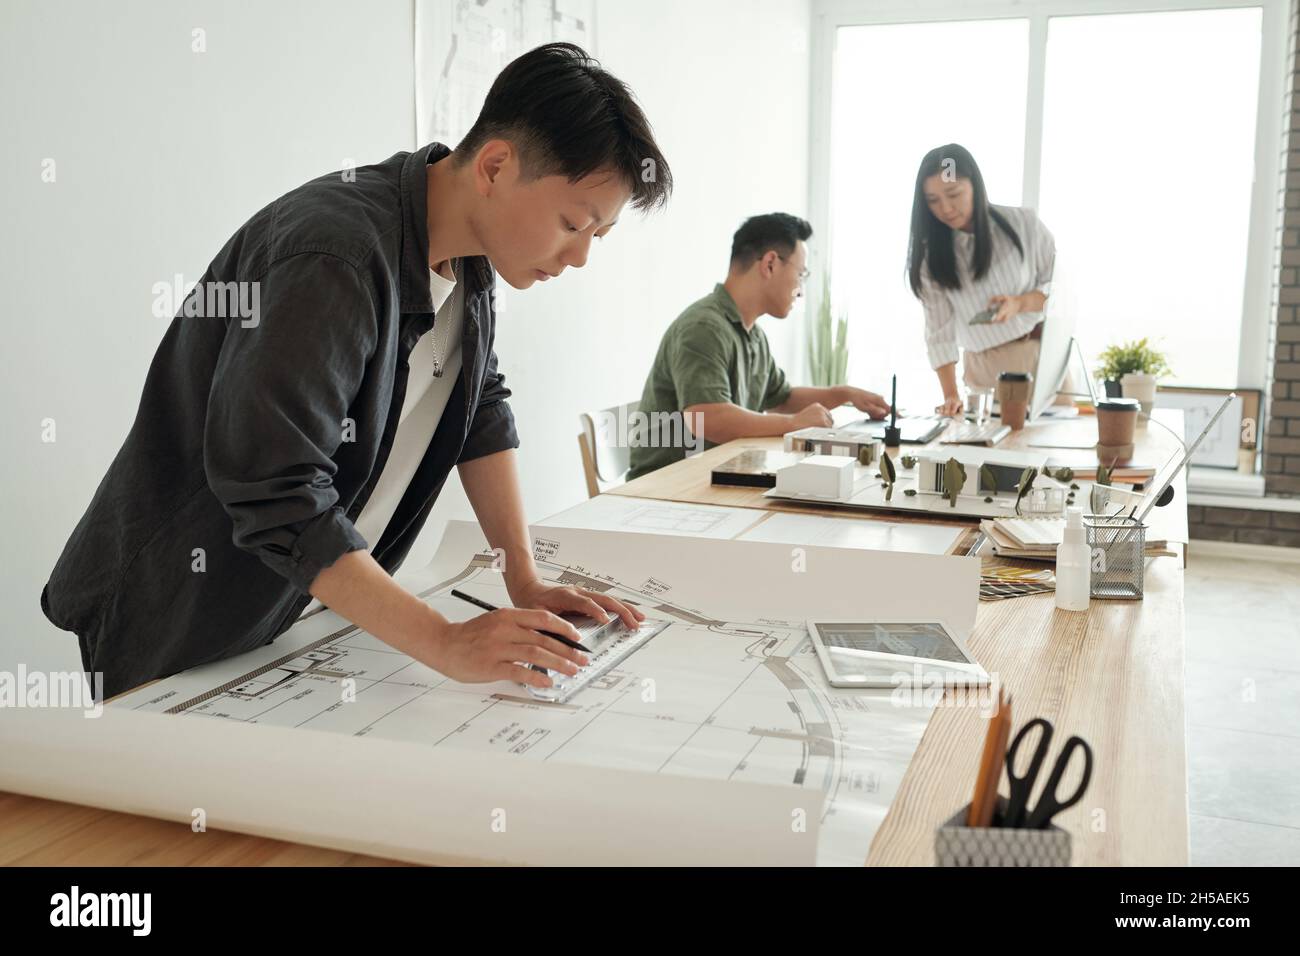 Jeune femme architecte ou ingénieur dessinant un croquis tout en se pliant sur la table contre ses deux collègues dans un grand bureau d'espace ouvert Banque D'Images